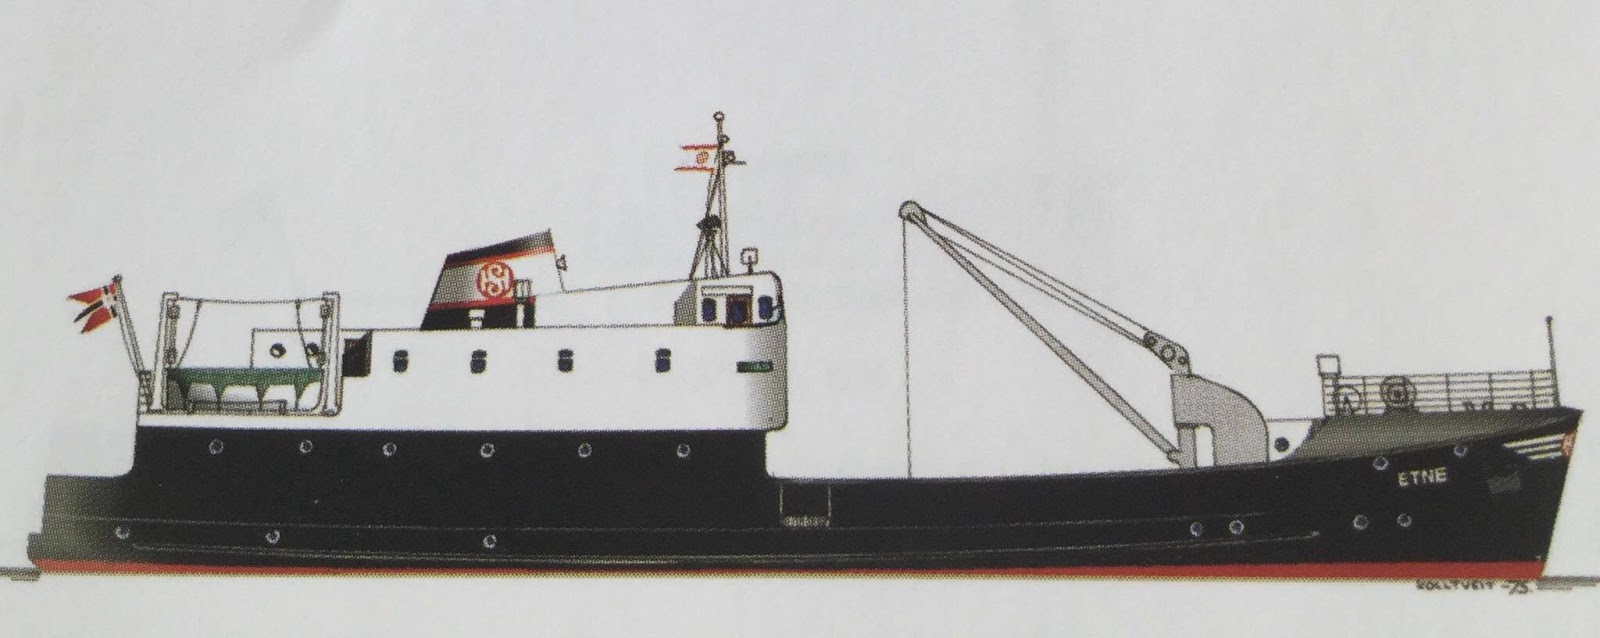 båt stavanger danmark